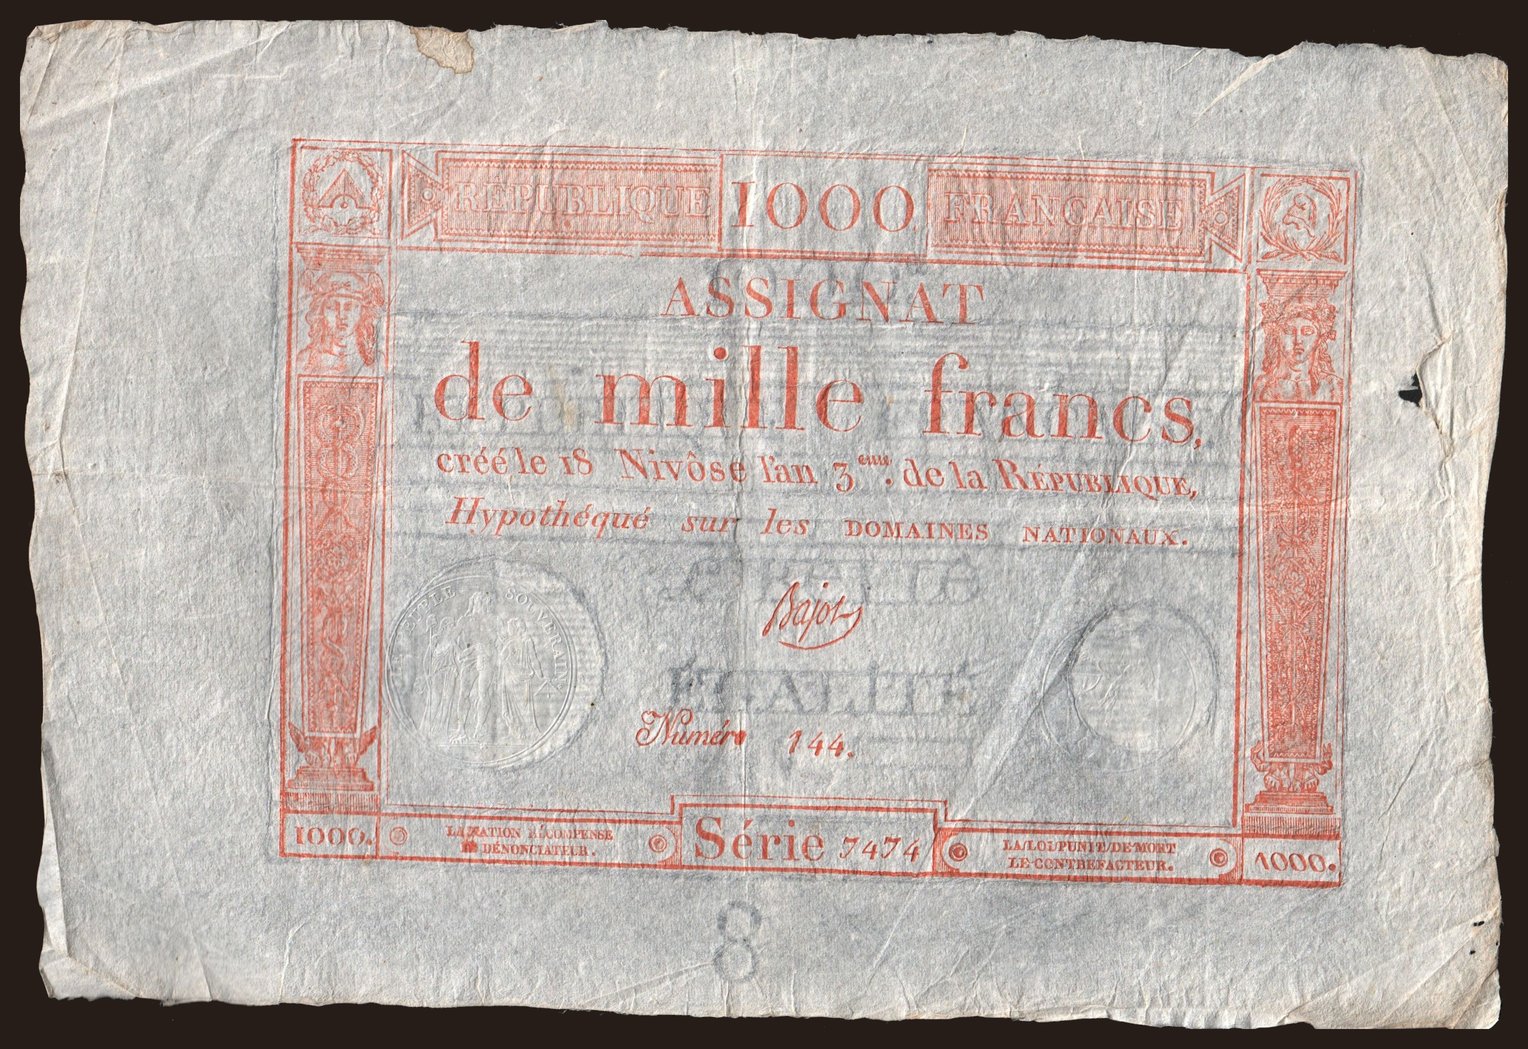 1000 francs, 1795